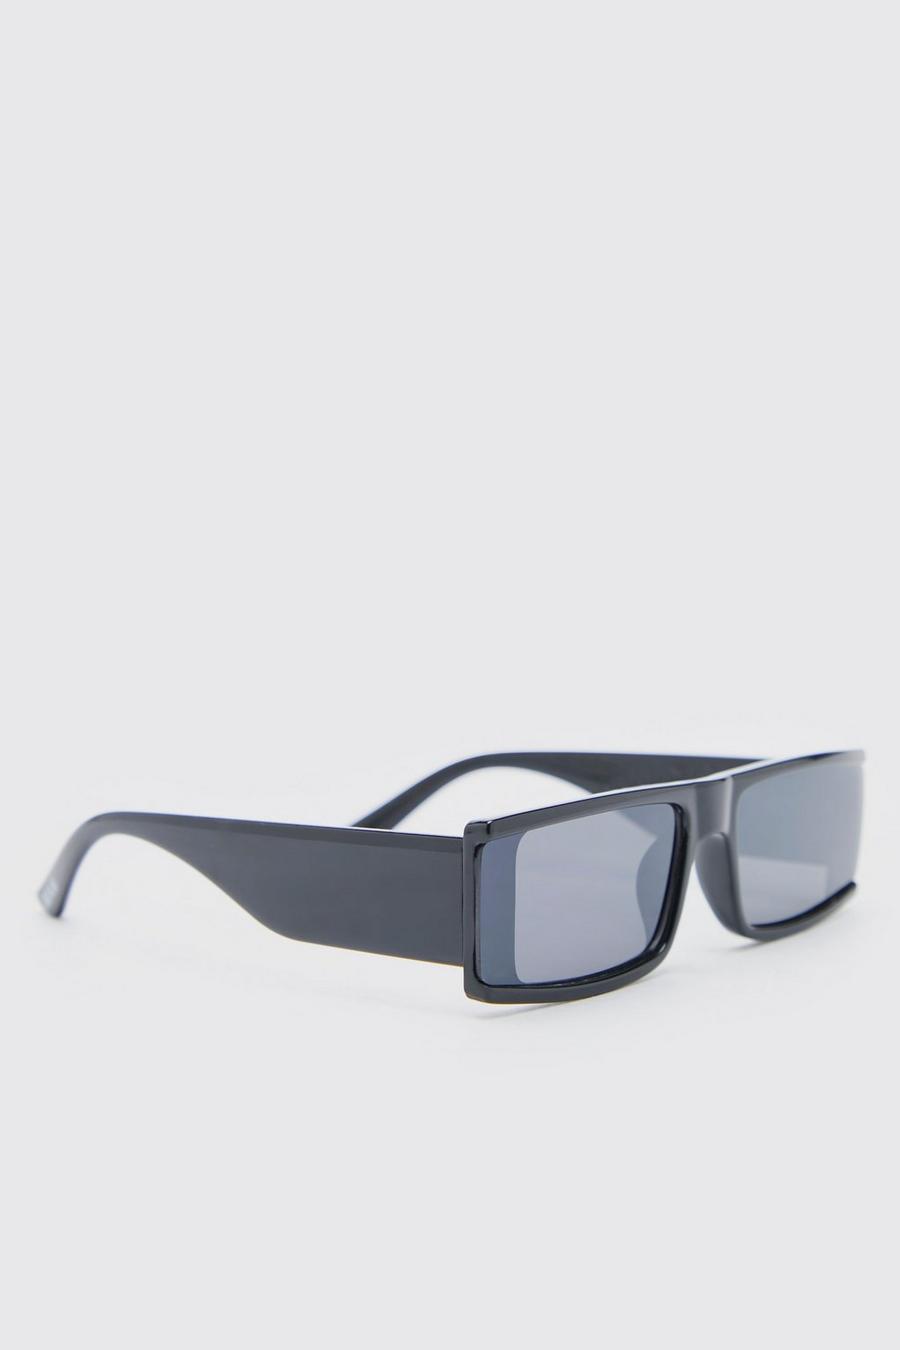 Gafas de sol de plástico reciclado estilo visera superpuestas, Black nero